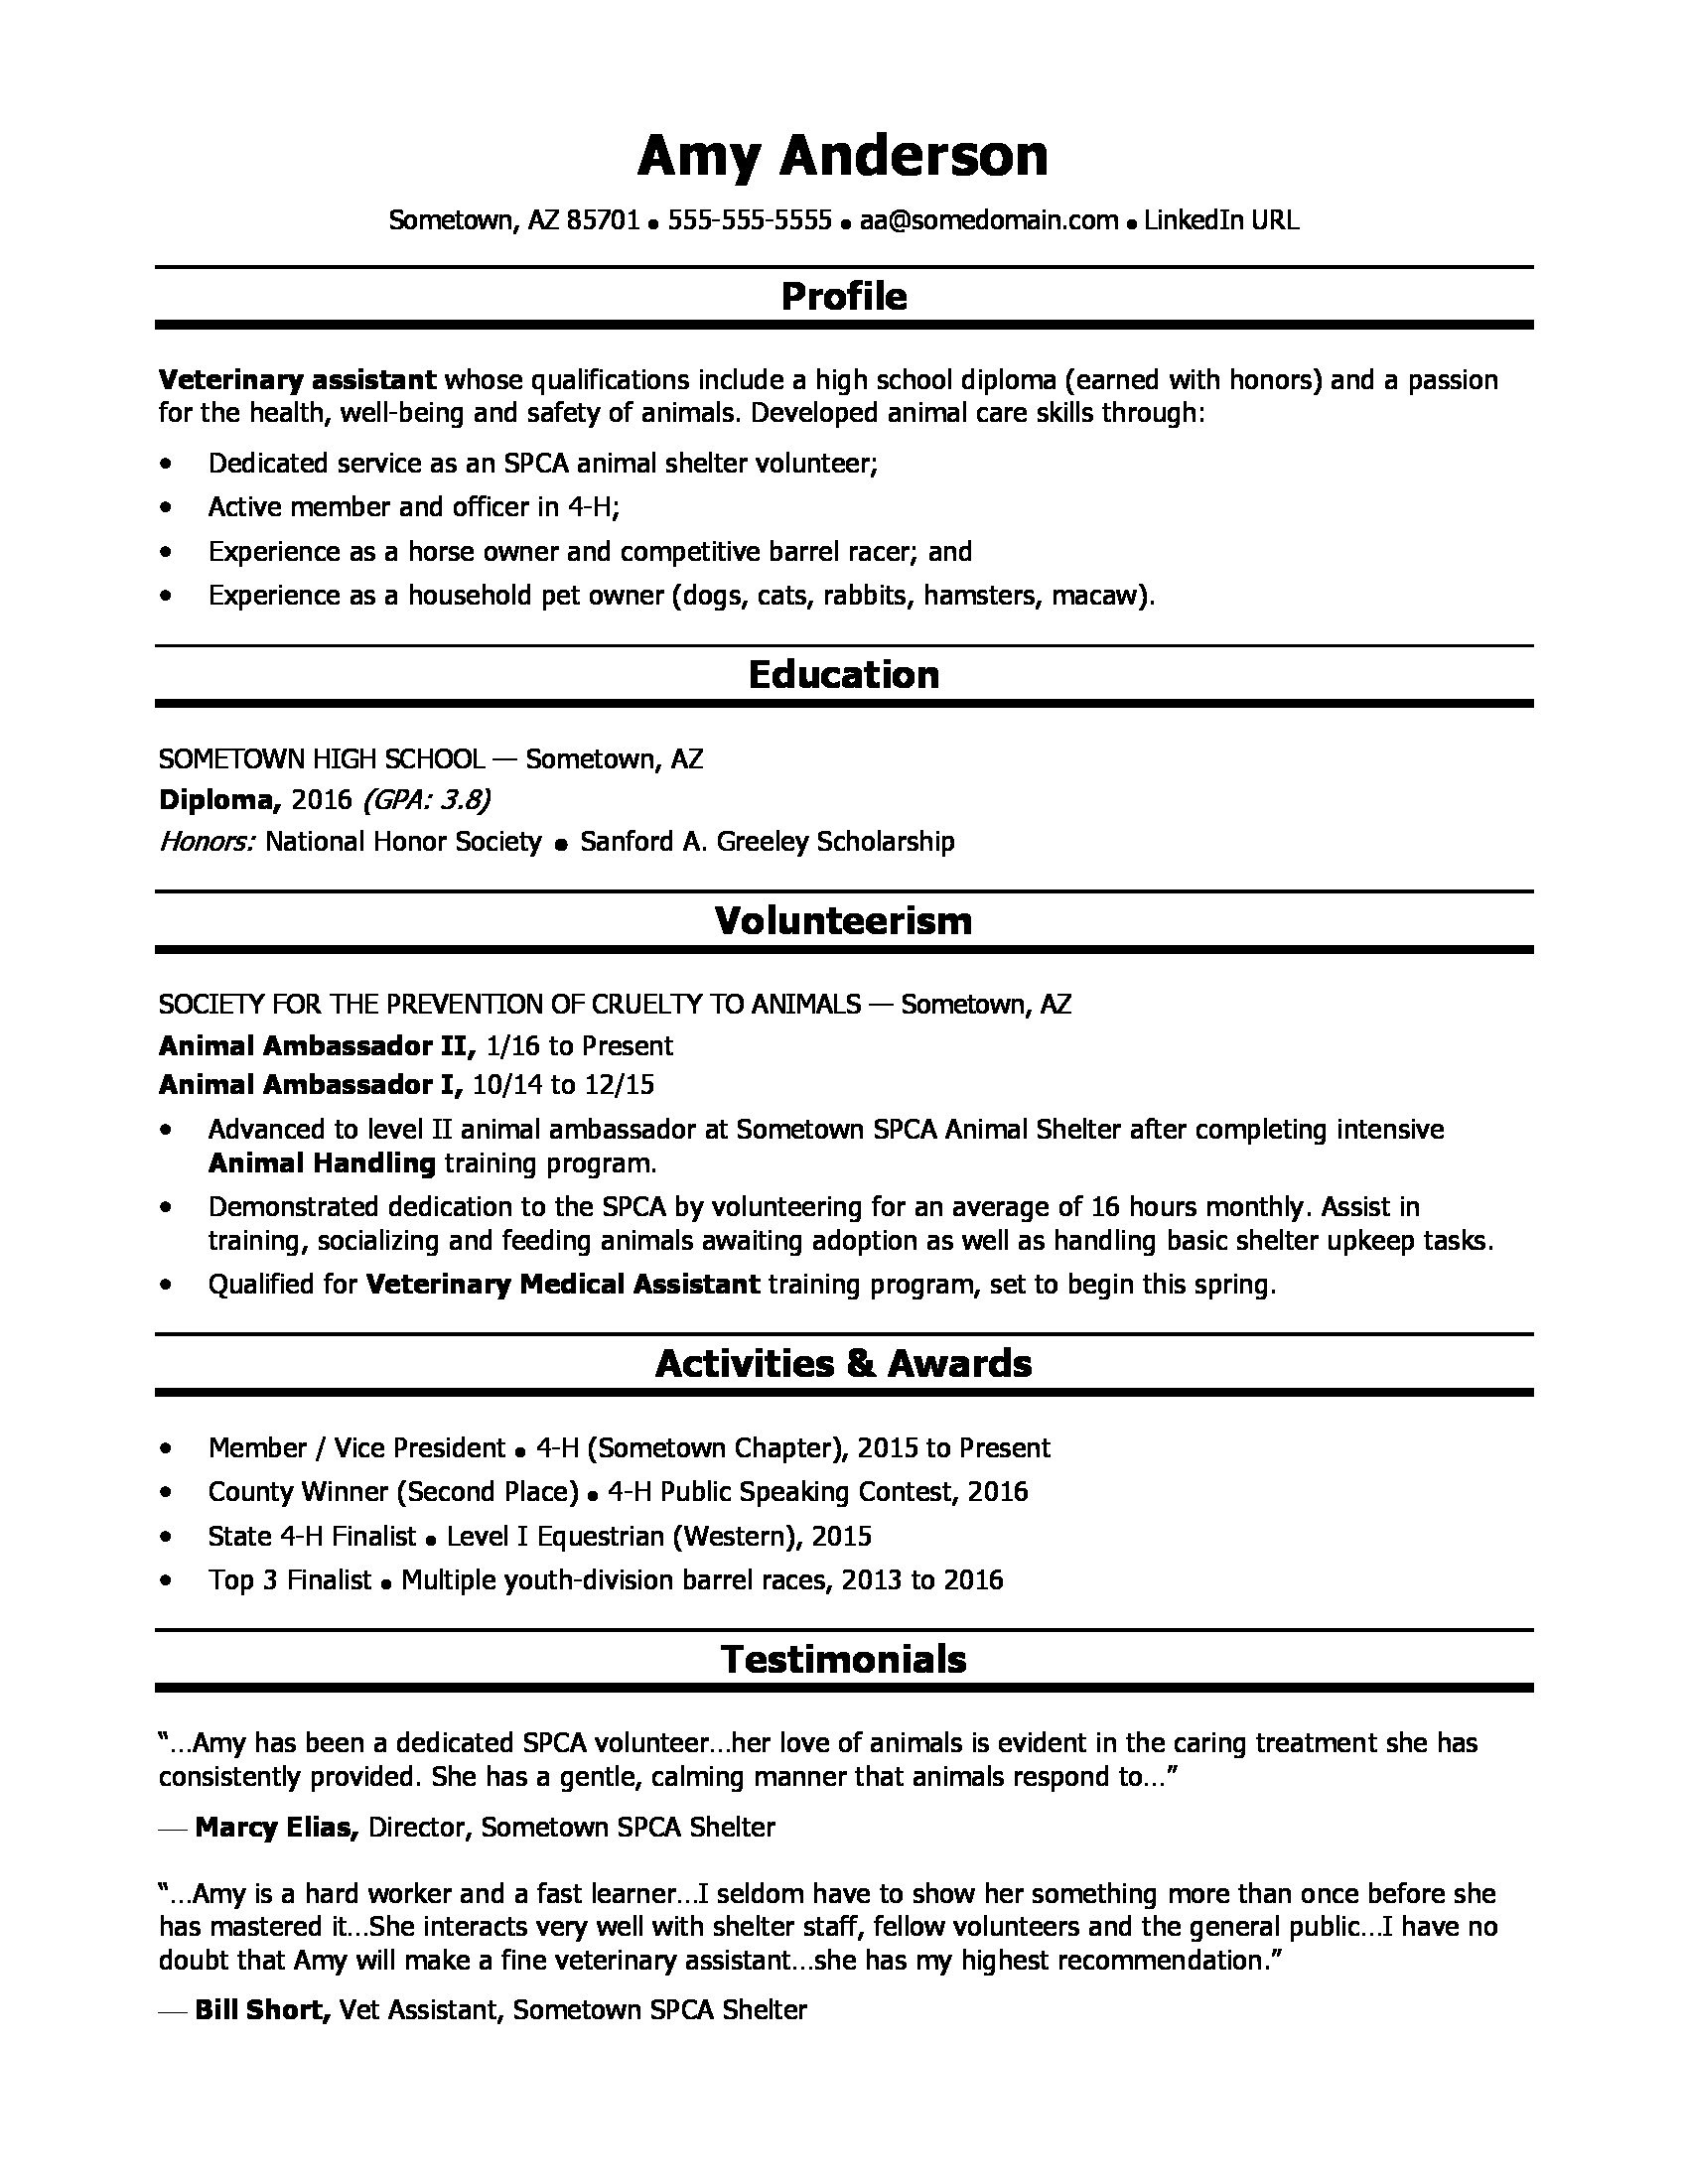 Sample Resume Entry Level High School High School Grad Resume Sample Monster.com